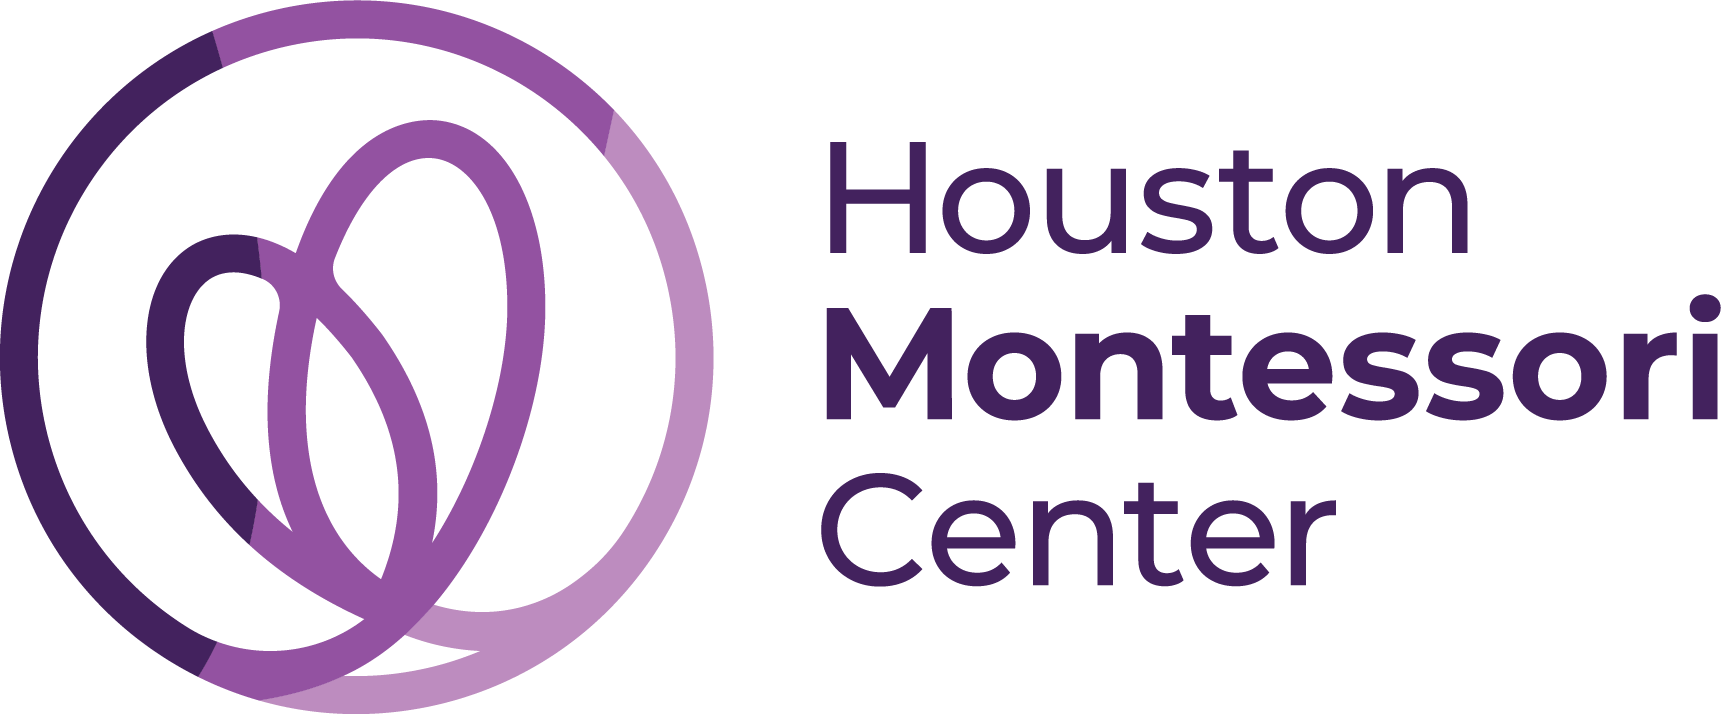 Houston Montessori Center